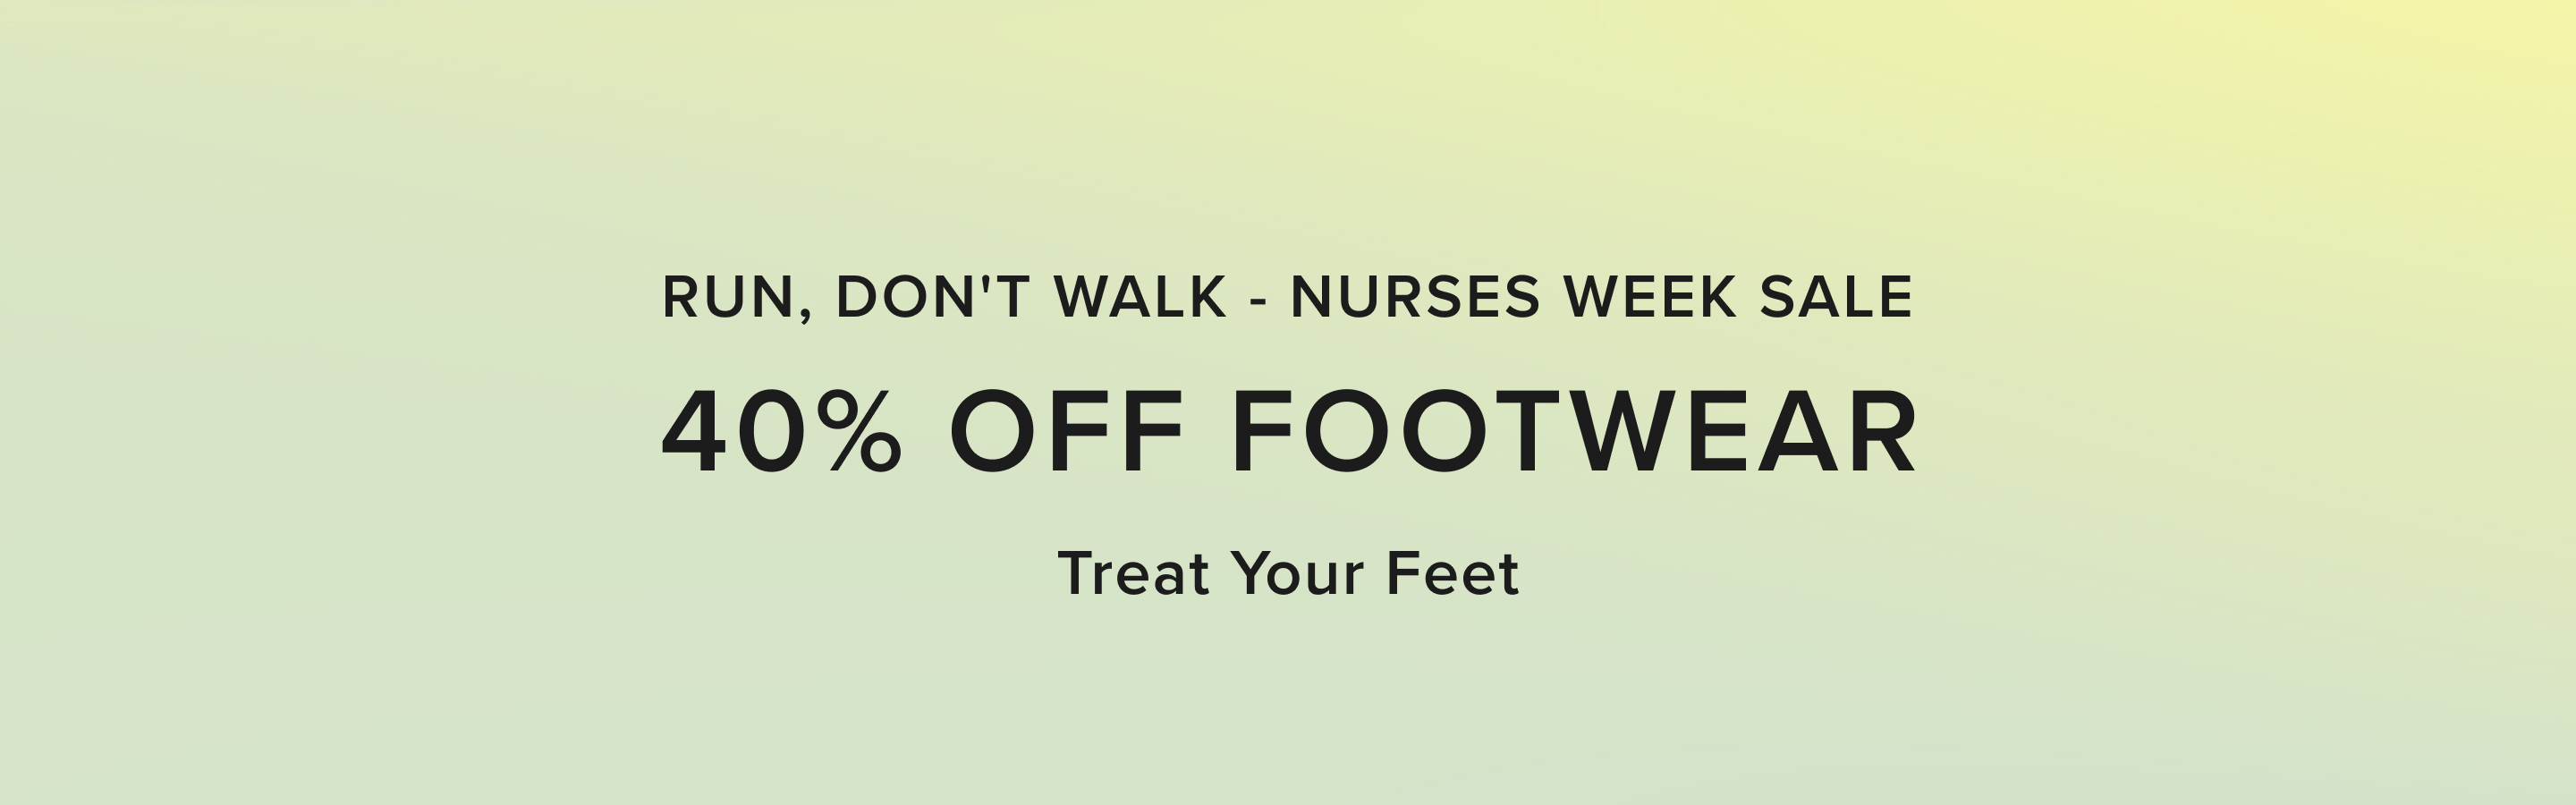 run, don't walk. nurses week sale, 40% off footwear. treat your feet.